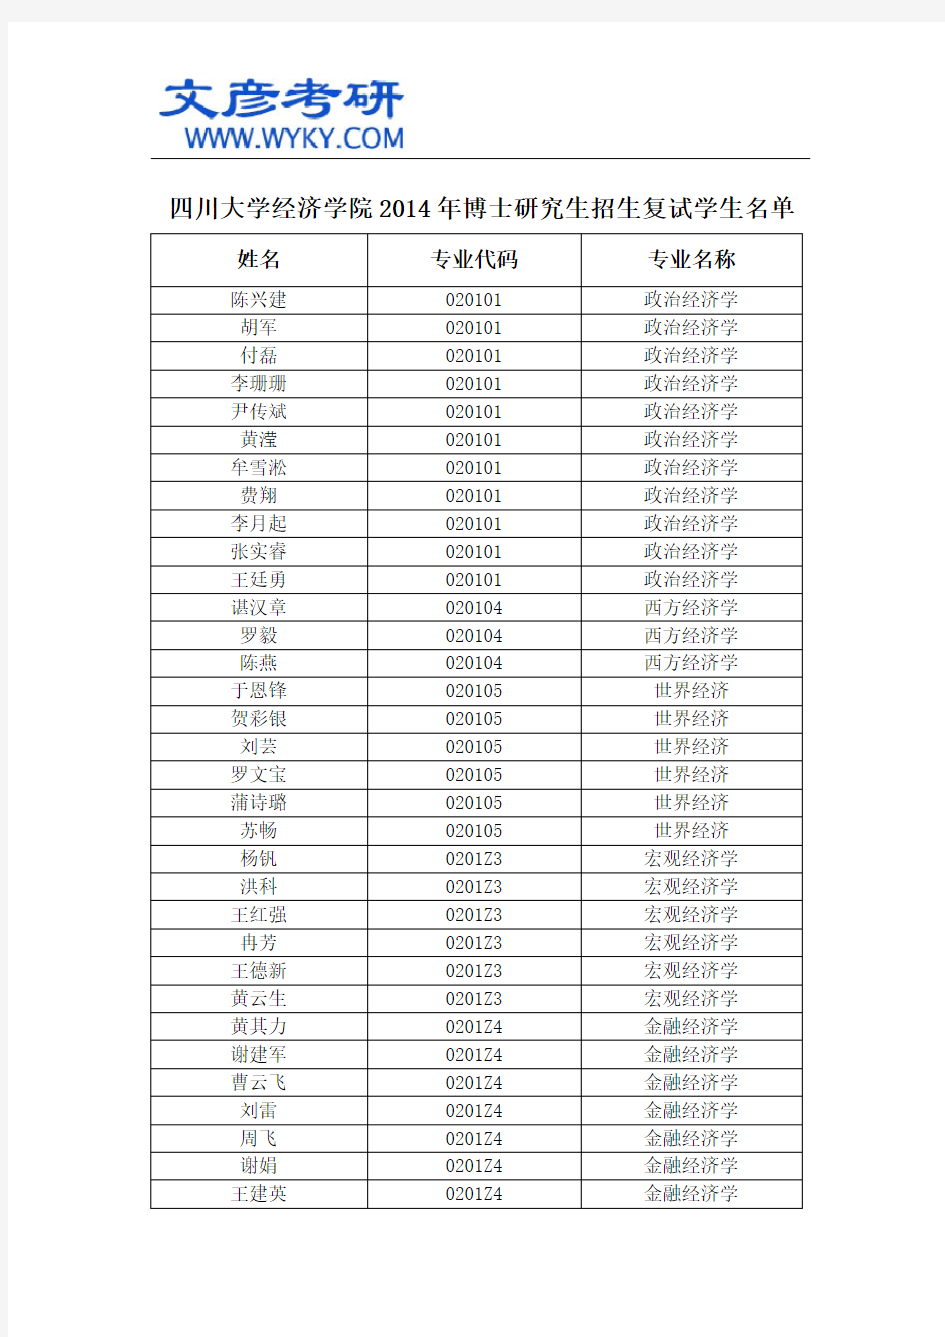 四川大学经济学院2014年博士研究生招生复试学生名单